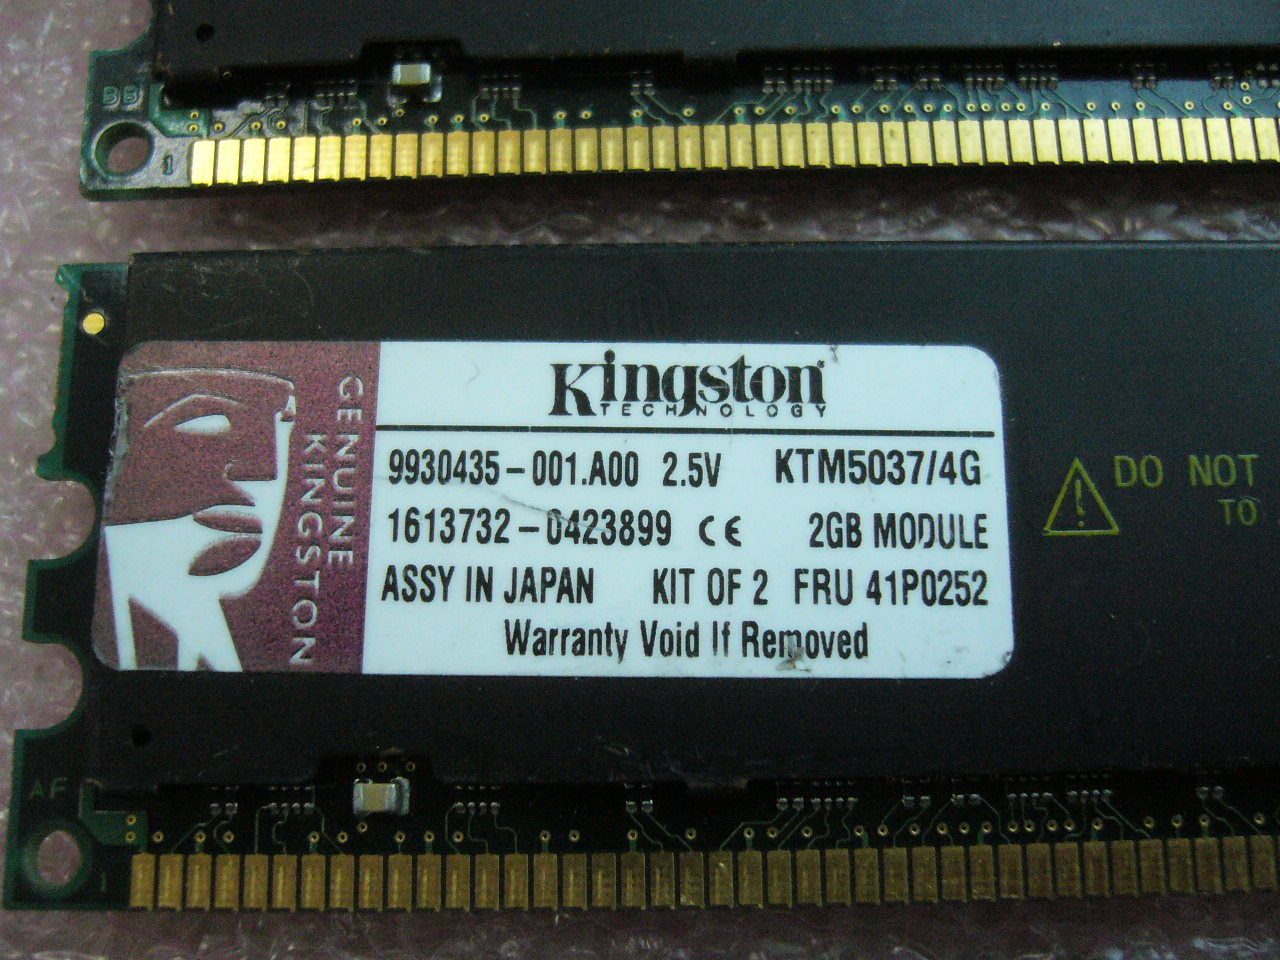 1x 2GB Kingston KTM5037/4G DDR 266,PC2100R ECC Registered Server memory 41P0252 - zum Schließen ins Bild klicken